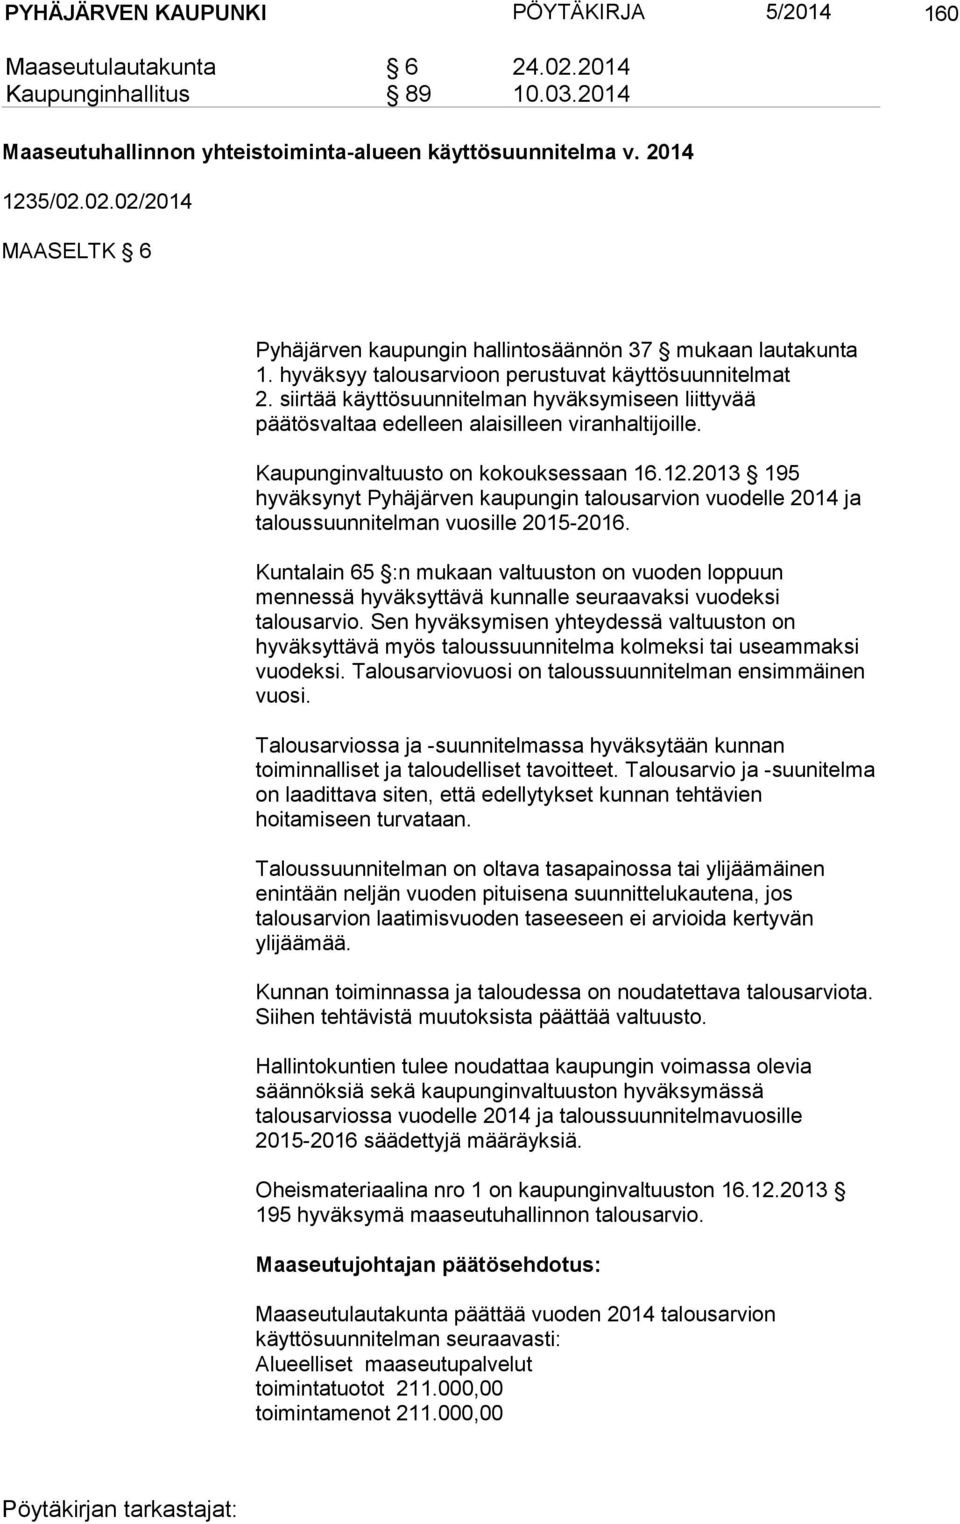 12.2013 195 hyväksynyt Pyhäjärven kaupungin talousarvion vuodelle 2014 ja taloussuunnitelman vuosille 2015-2016.